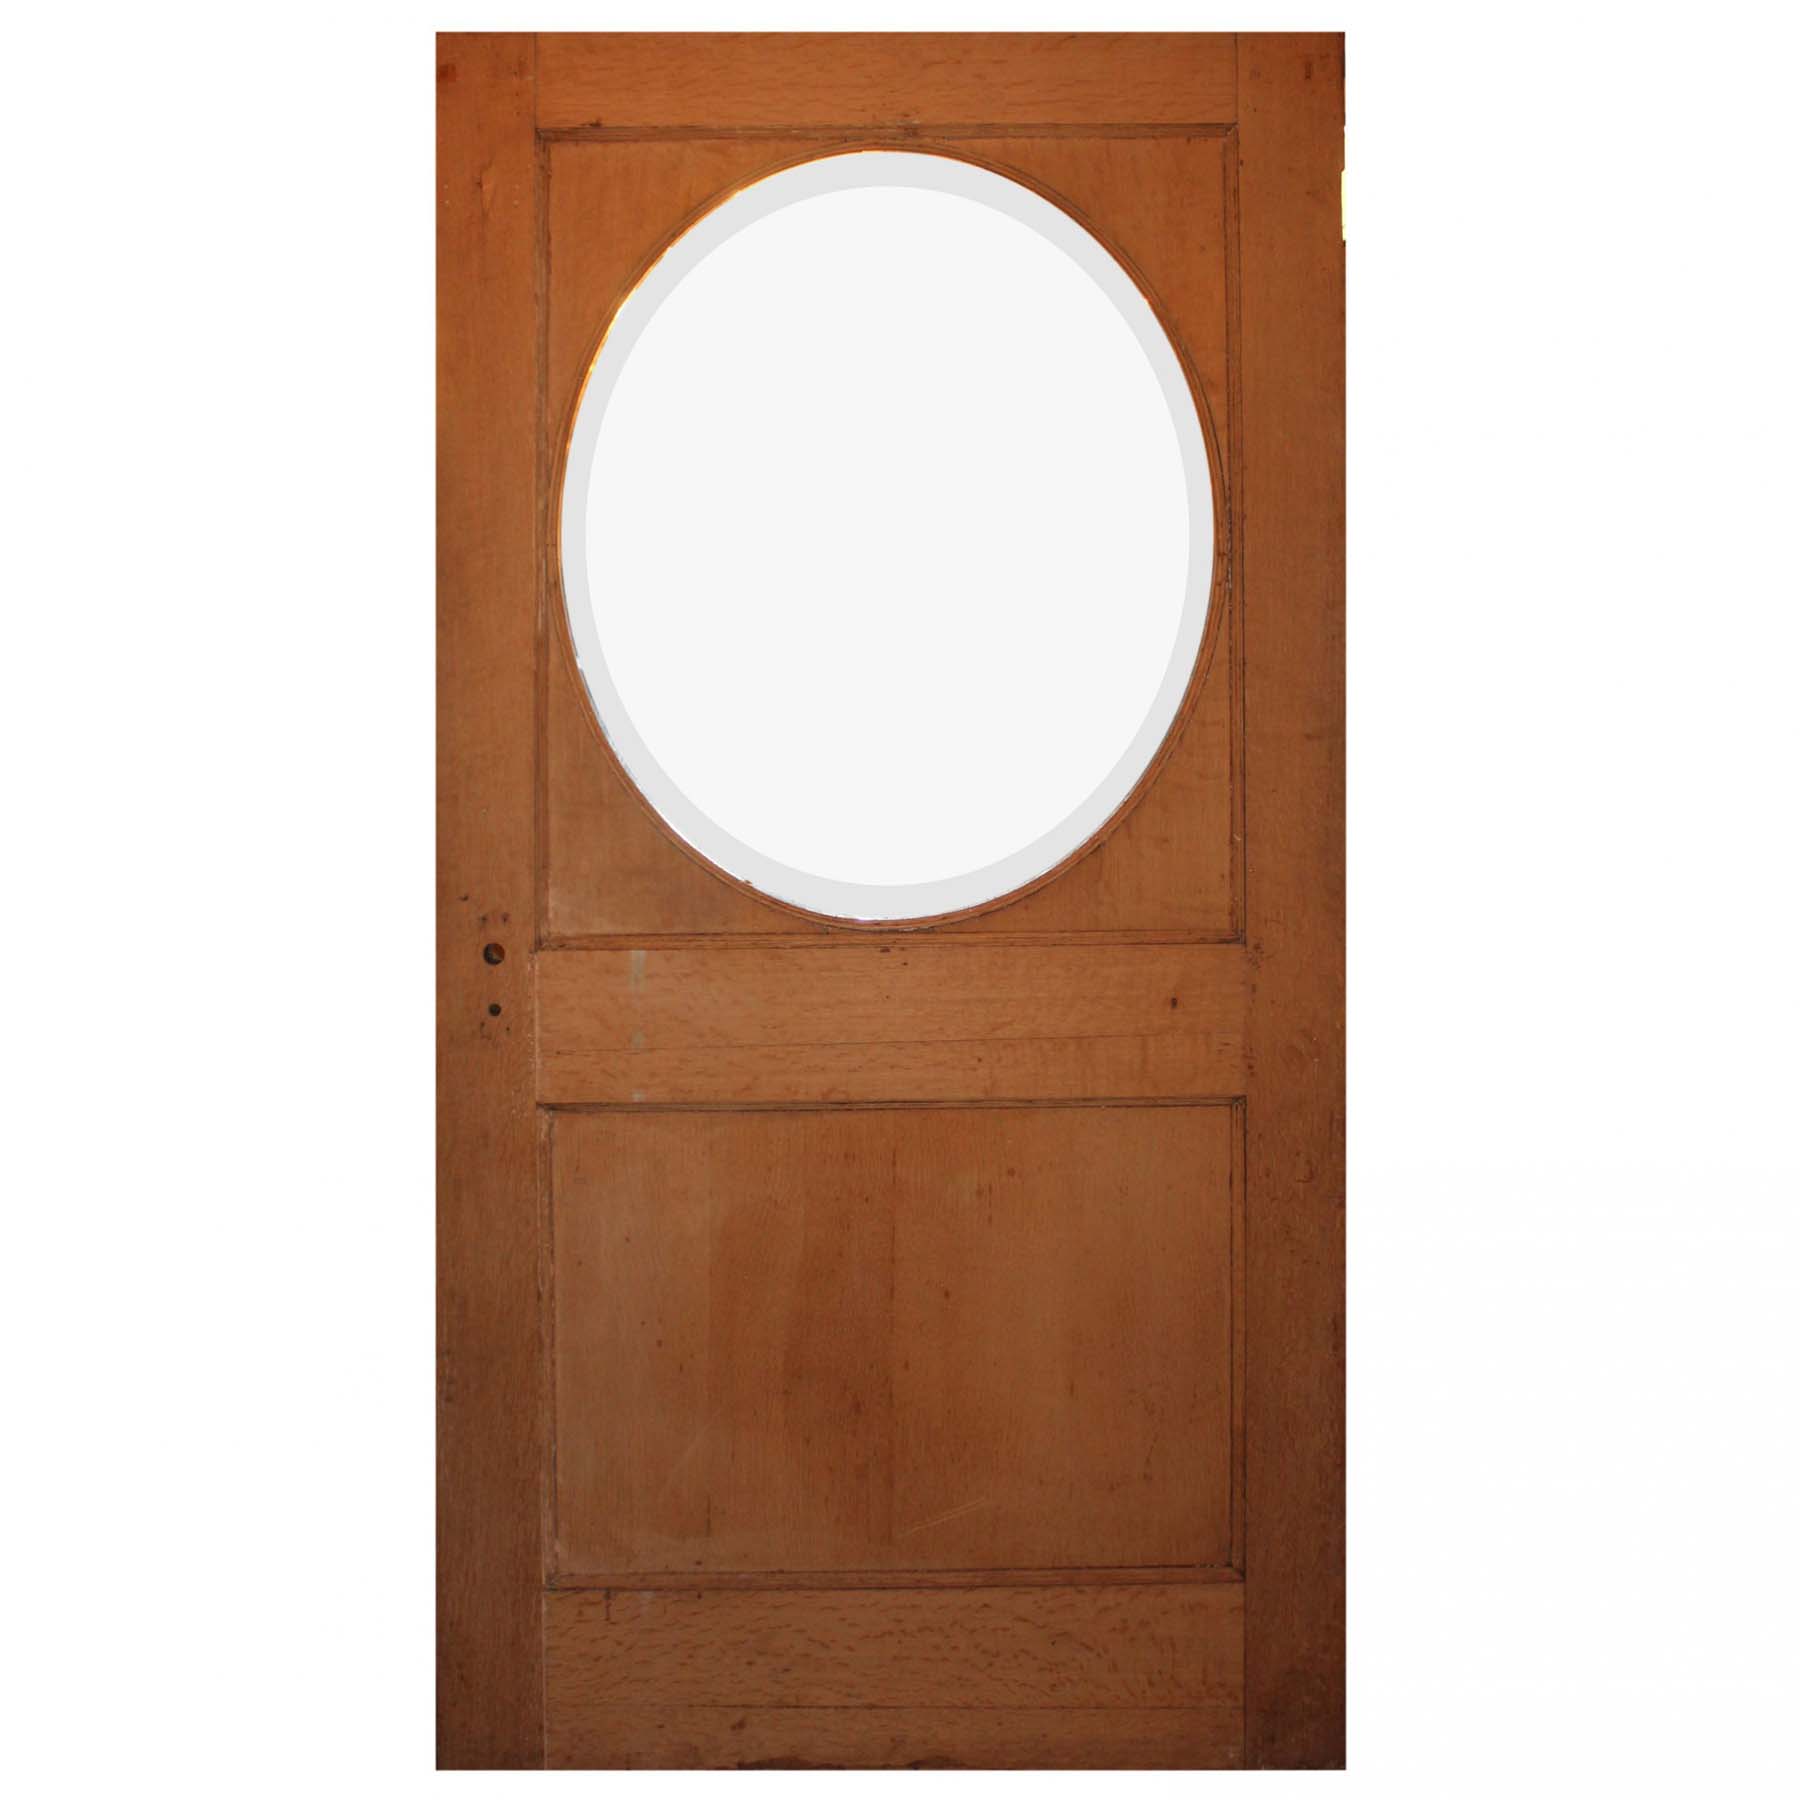 SOLD Reclaimed 42” Antique Neoclassical Door with Circular Window, c. 1910-67154